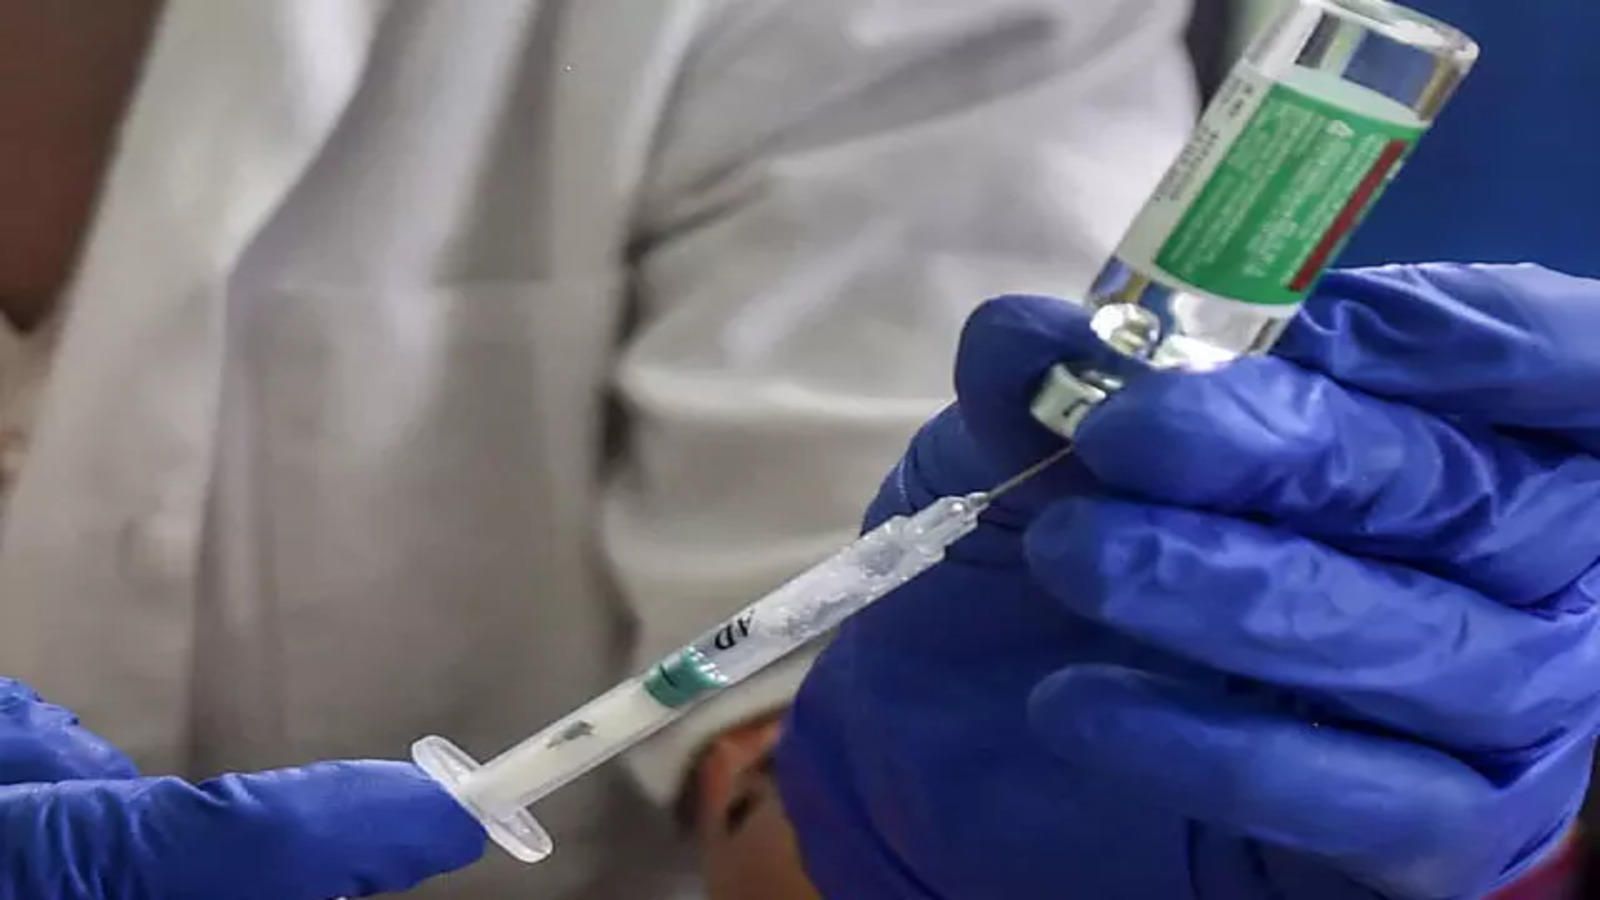 India crosses historic one billion COVID-19 vaccine milestone